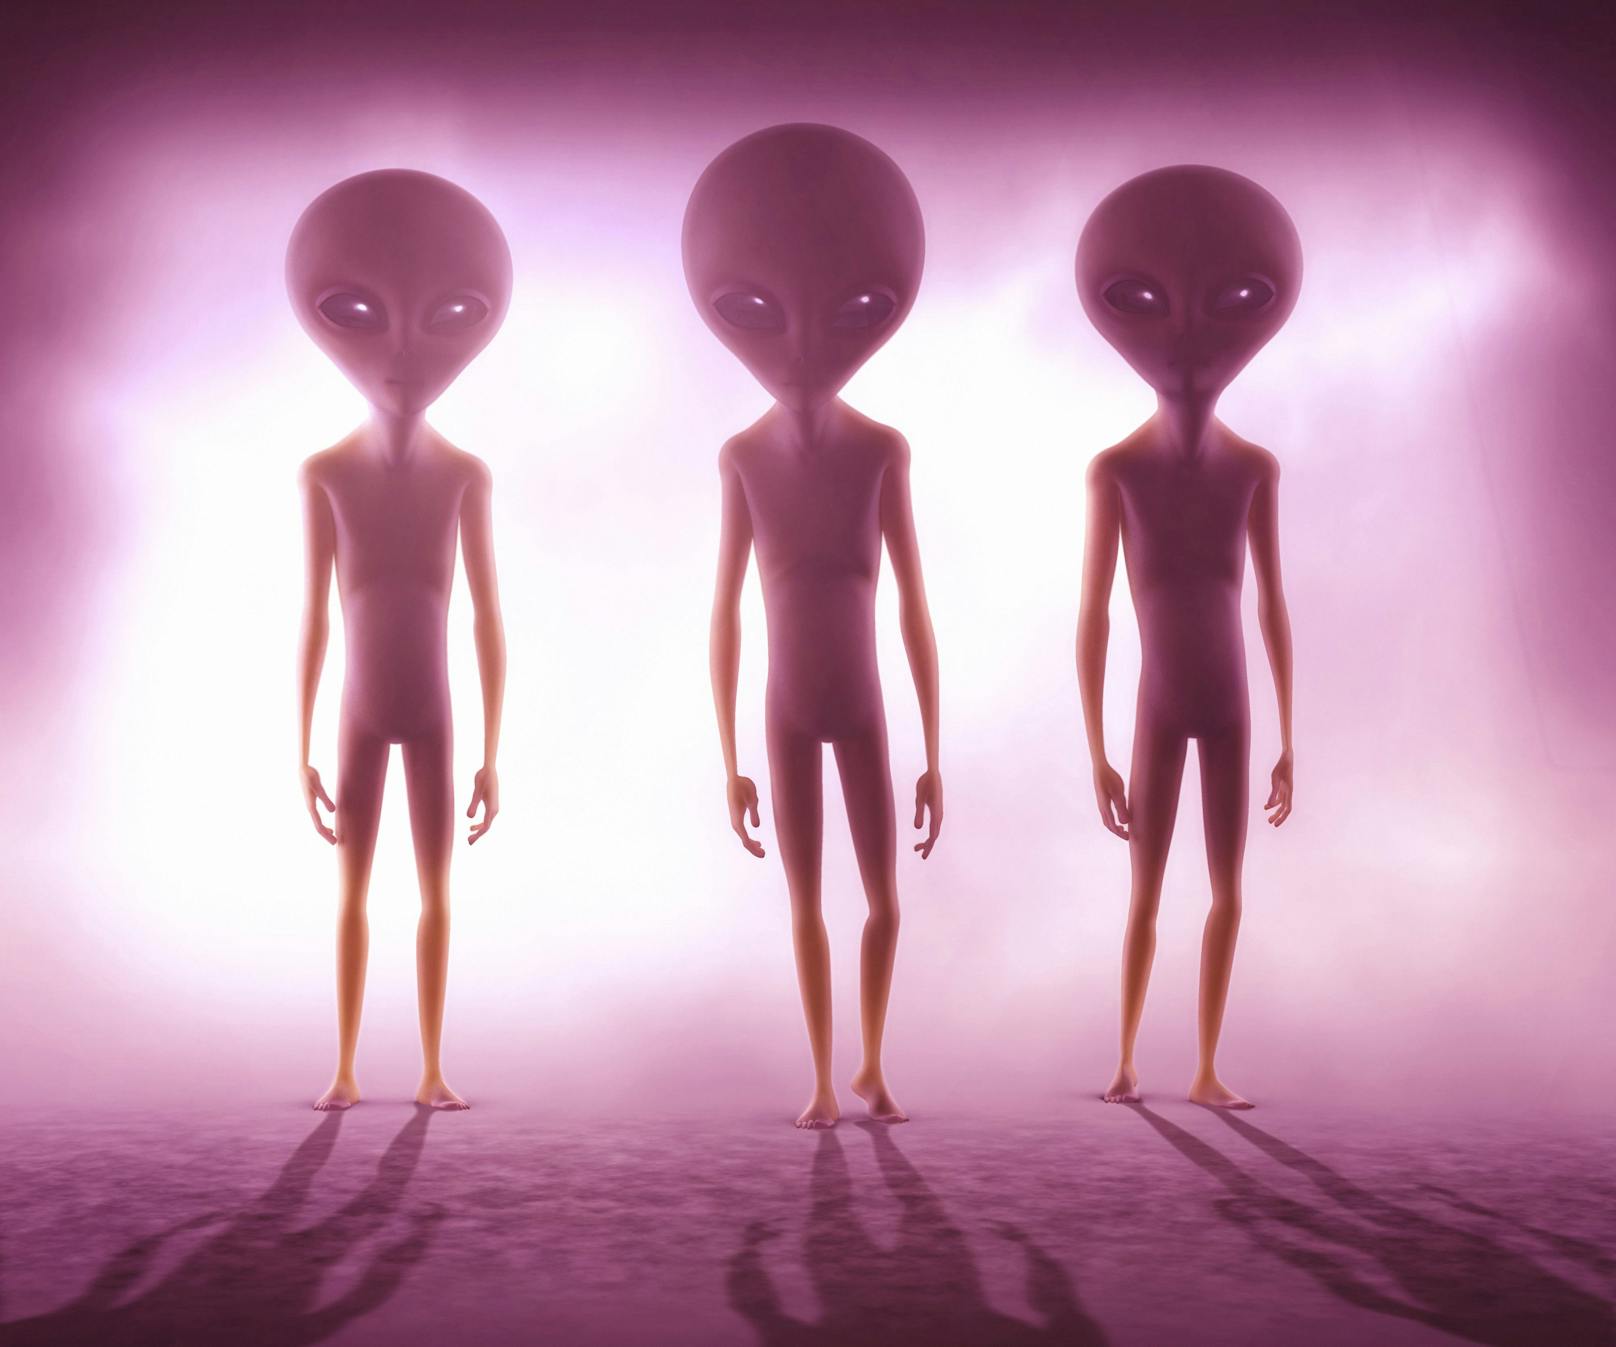 Forscher sicher: Es gibt Beweise für Alien-Existenz